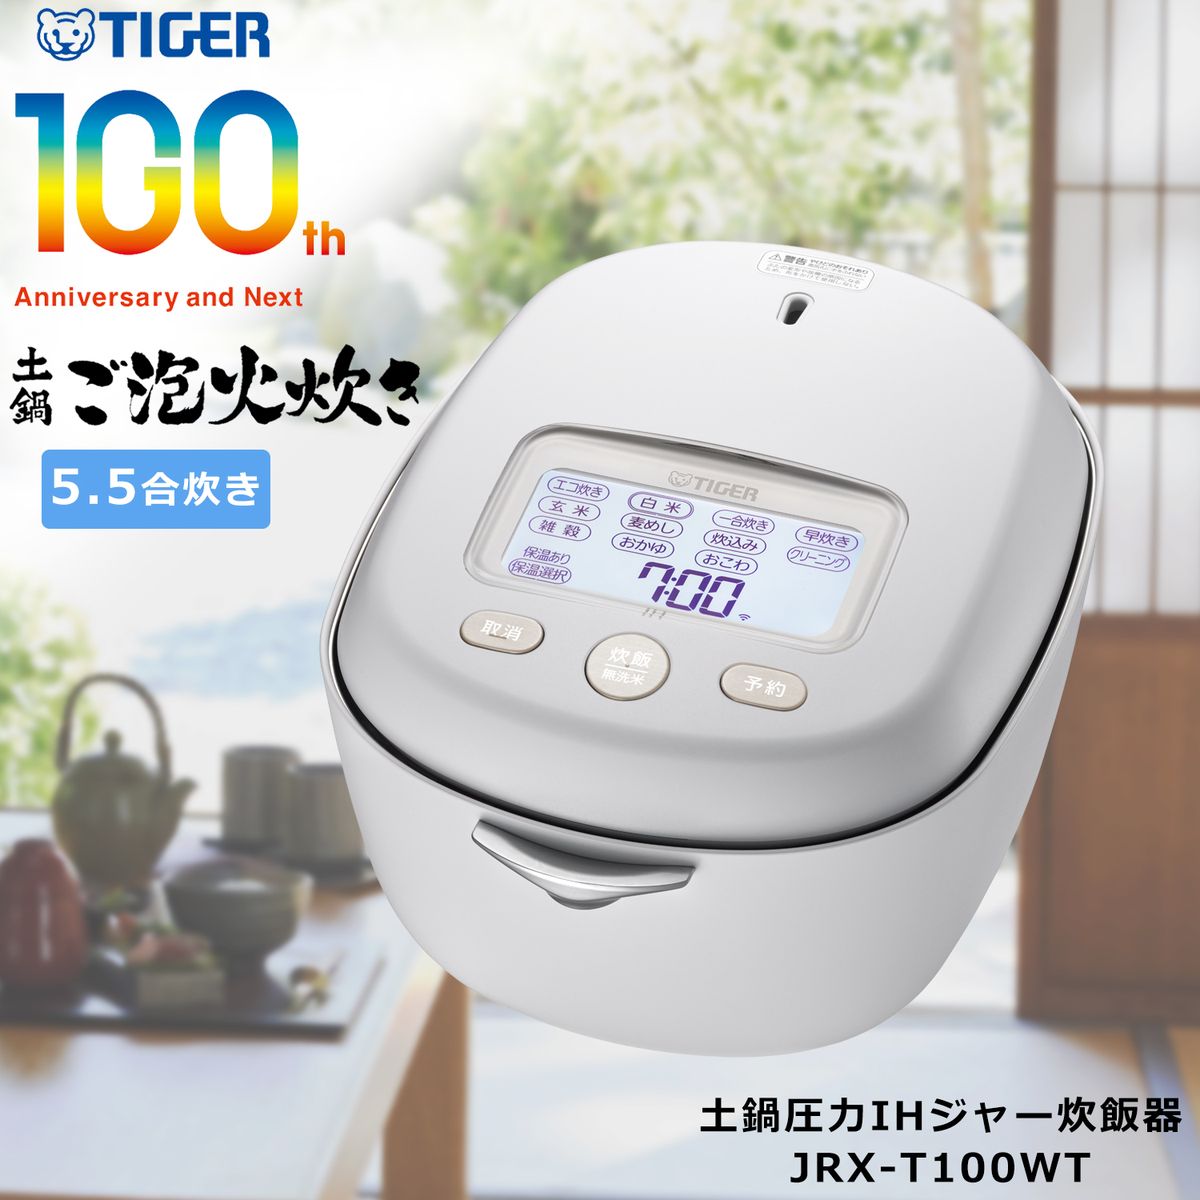 炊飯器 5.5合 タイガー Tiger 圧力 IH 日本製 土鍋 炊きたて 土鍋5年保証 お手入れ 簡単 白 ホワイト 100周年 炊き分け スマホ IoT DX